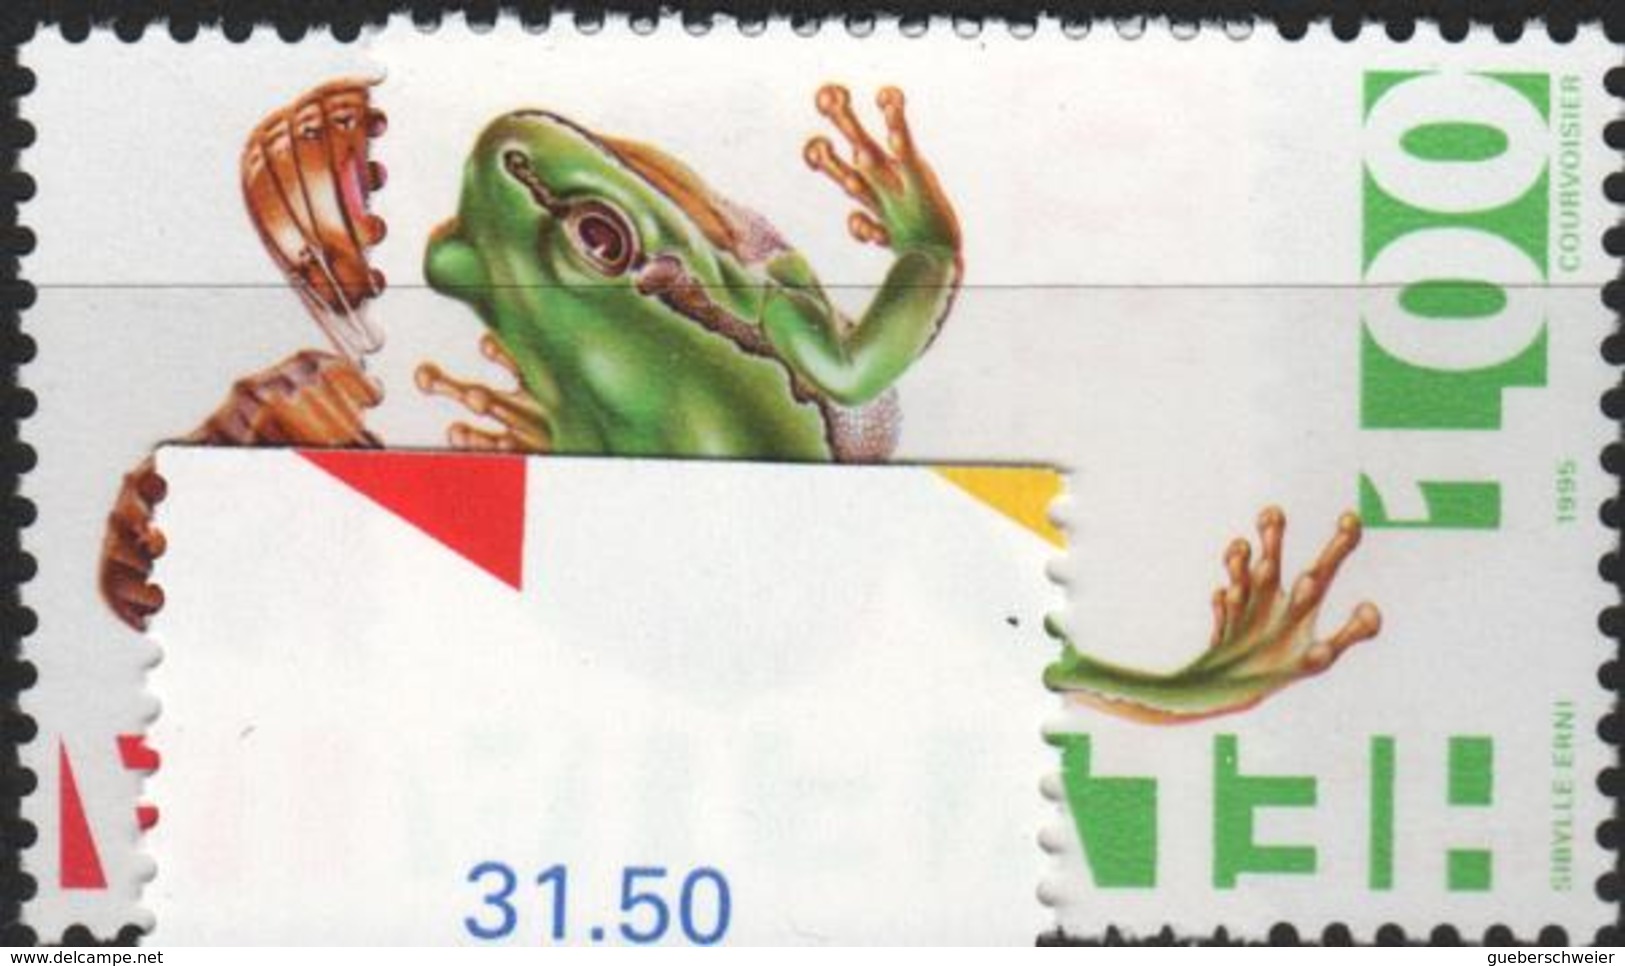 Lot de timbres de Suisse neufs** avec séries complètes, blocs de 4 et coins datés à - 40% de la faciale